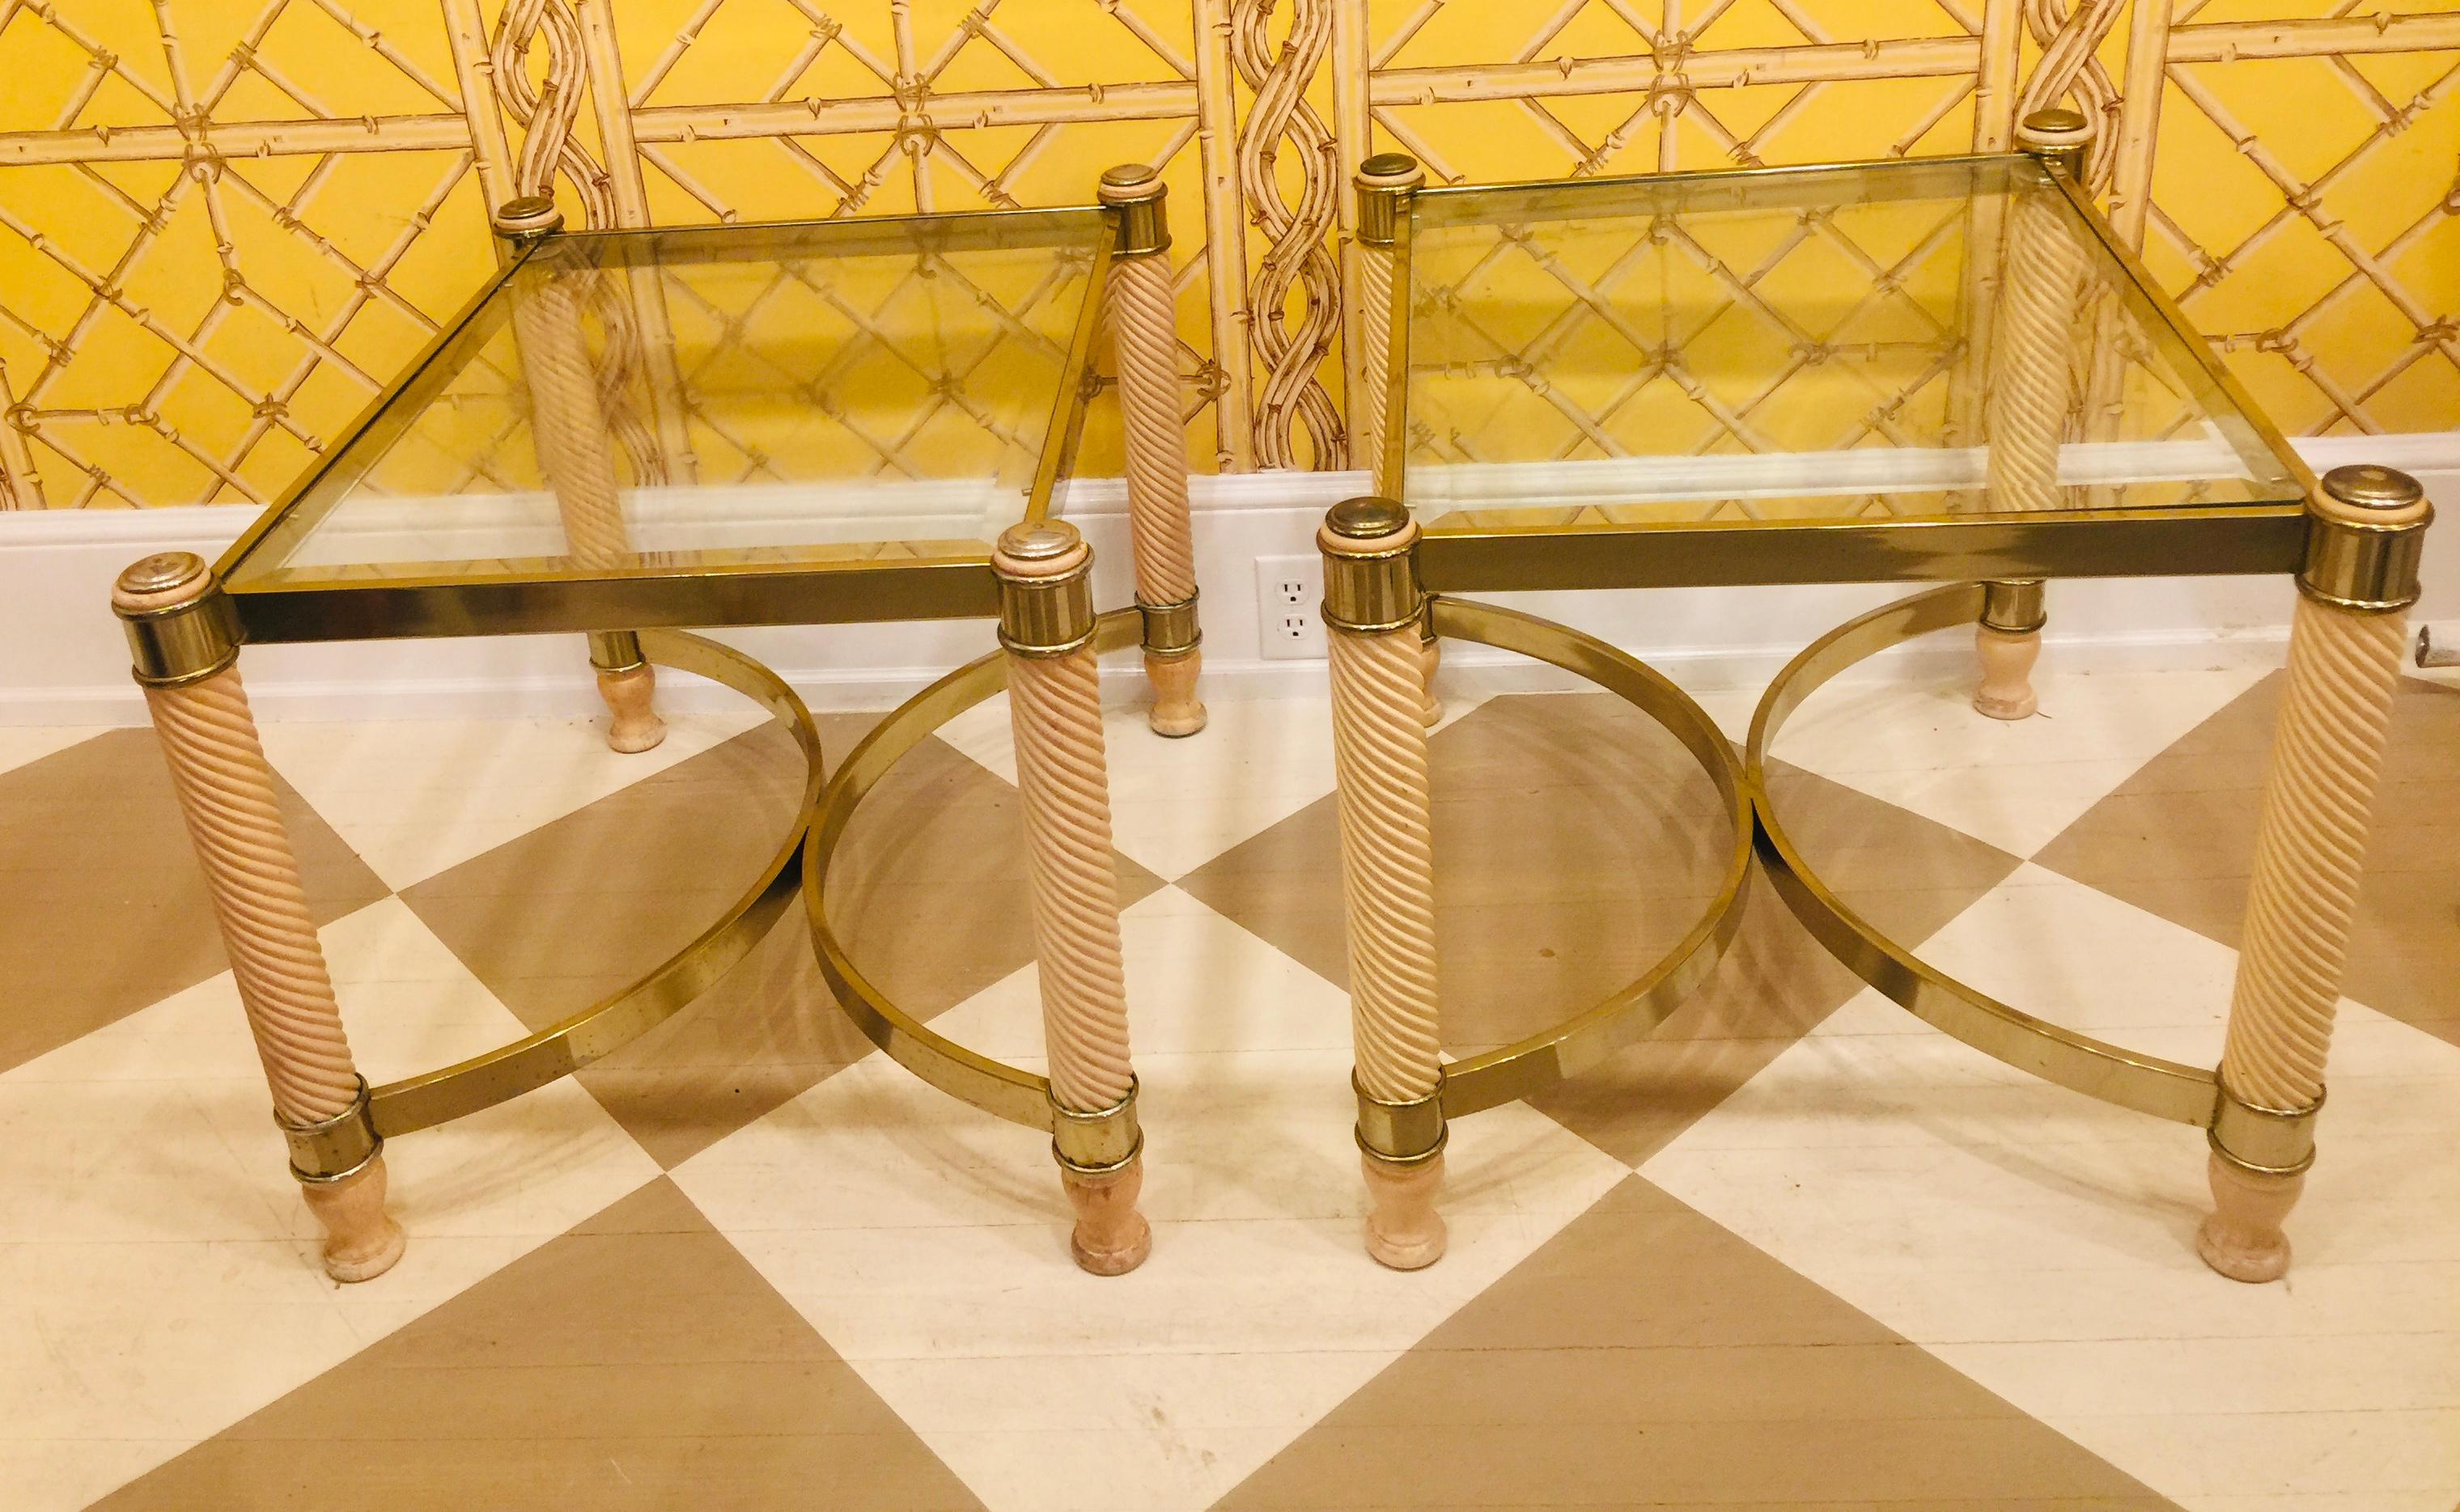 Paire de tables d'appoint ou de tables à cocktail en métal doré, bois sculpté et verre, datant du début du XXe siècle. Pieds de forme tournés et sculptés, peints en couleur faux ivoire pour ressembler à l'original
Ivoire sculpté.